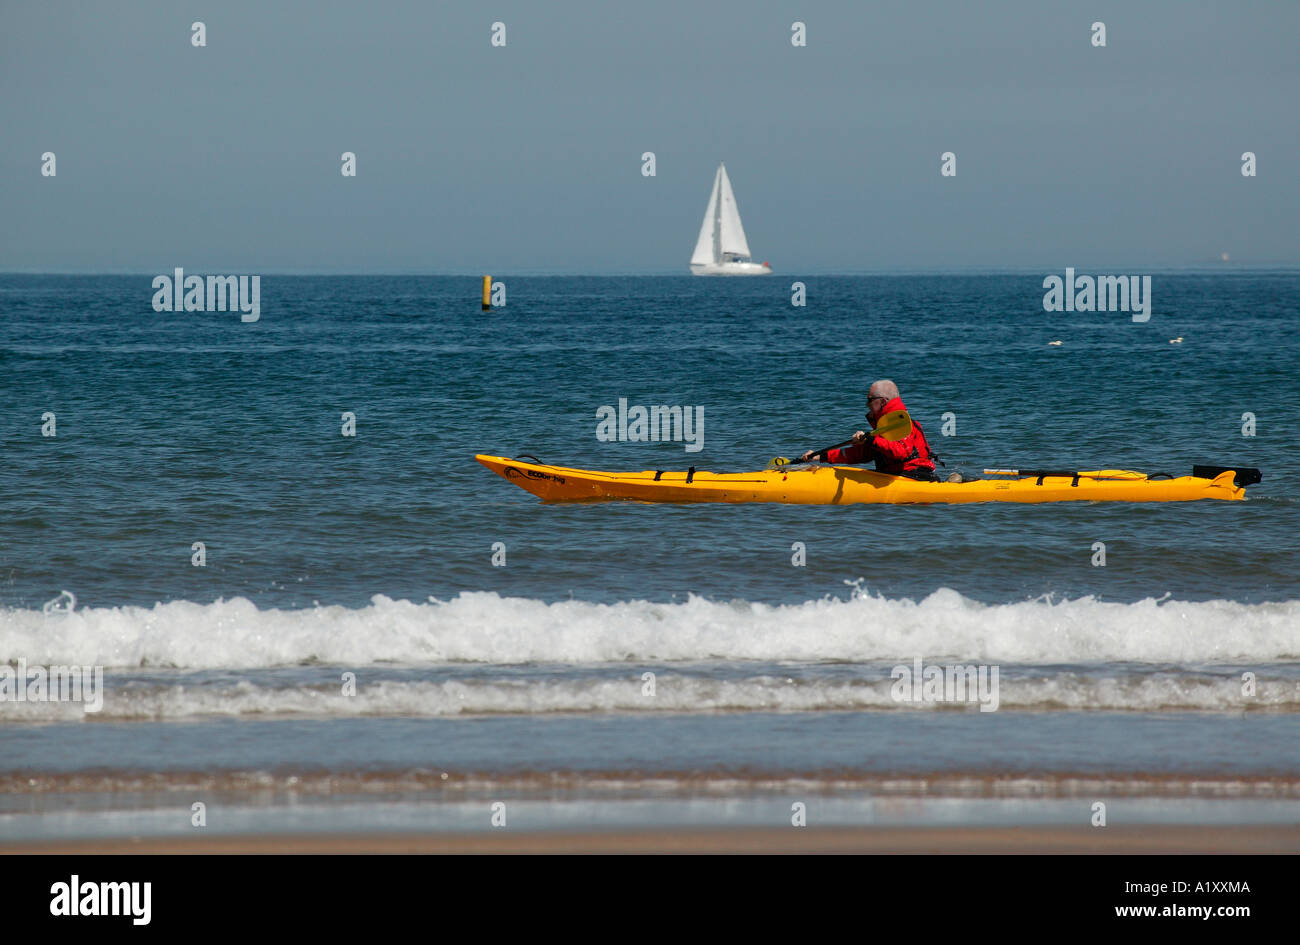 Gelben Kanu mit Mann in rote Jacke Segeln, nahe der schottischen Küste mit Yacht im Hintergrund Stockfoto